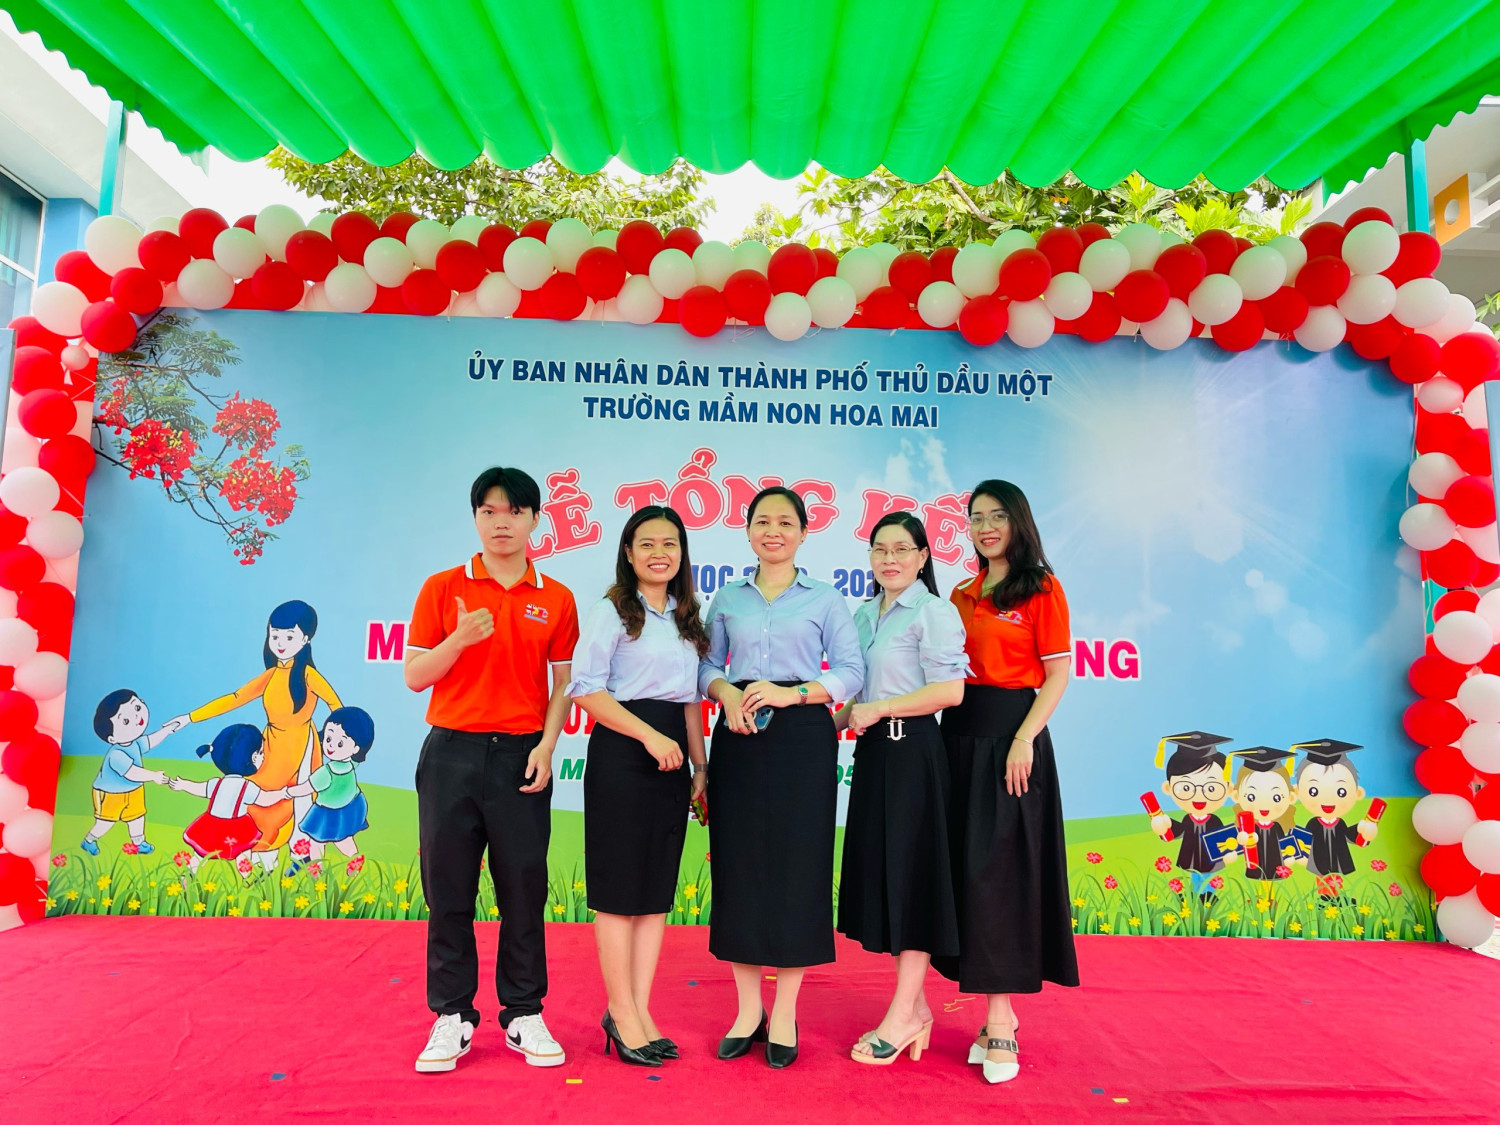 Trường mầm non Hoa Mai đã tổ chức lễ ra trường cho các bé Khối Lá (5-6 tuổi).